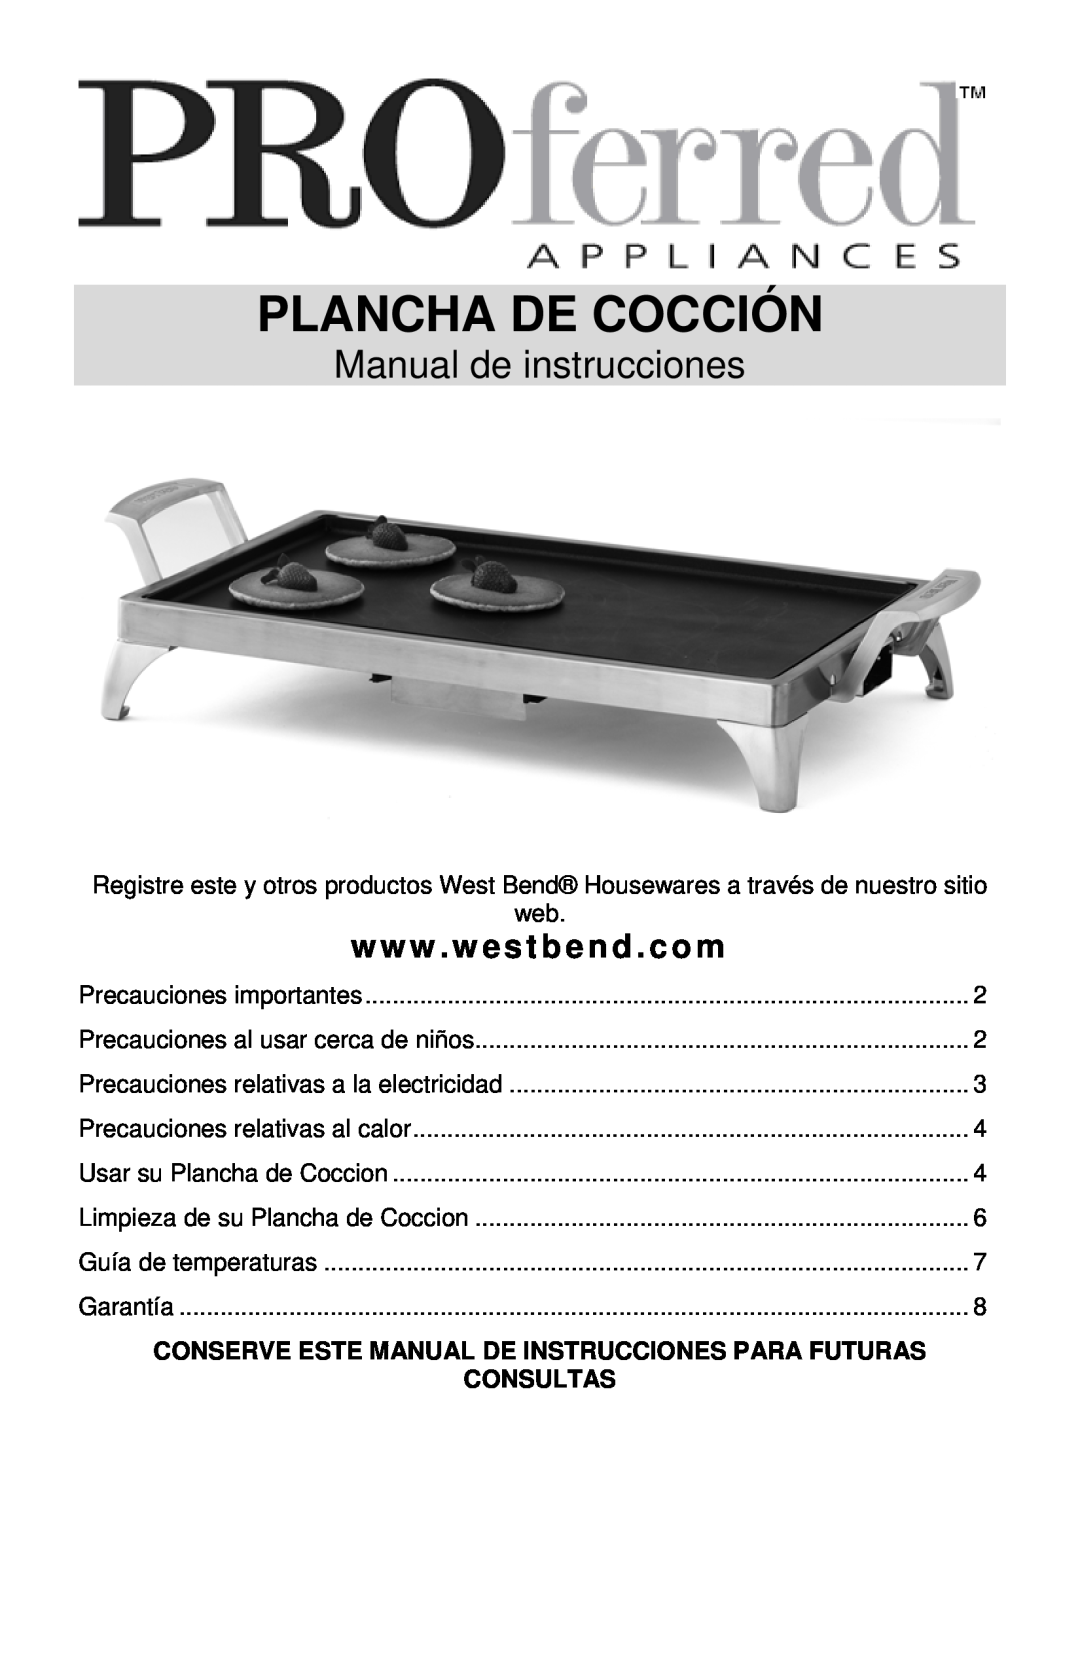 West Bend 79012, L5687 instruction manual Manual de instrucciones, Consultas, Plancha De Cocción, www . westbend . com 